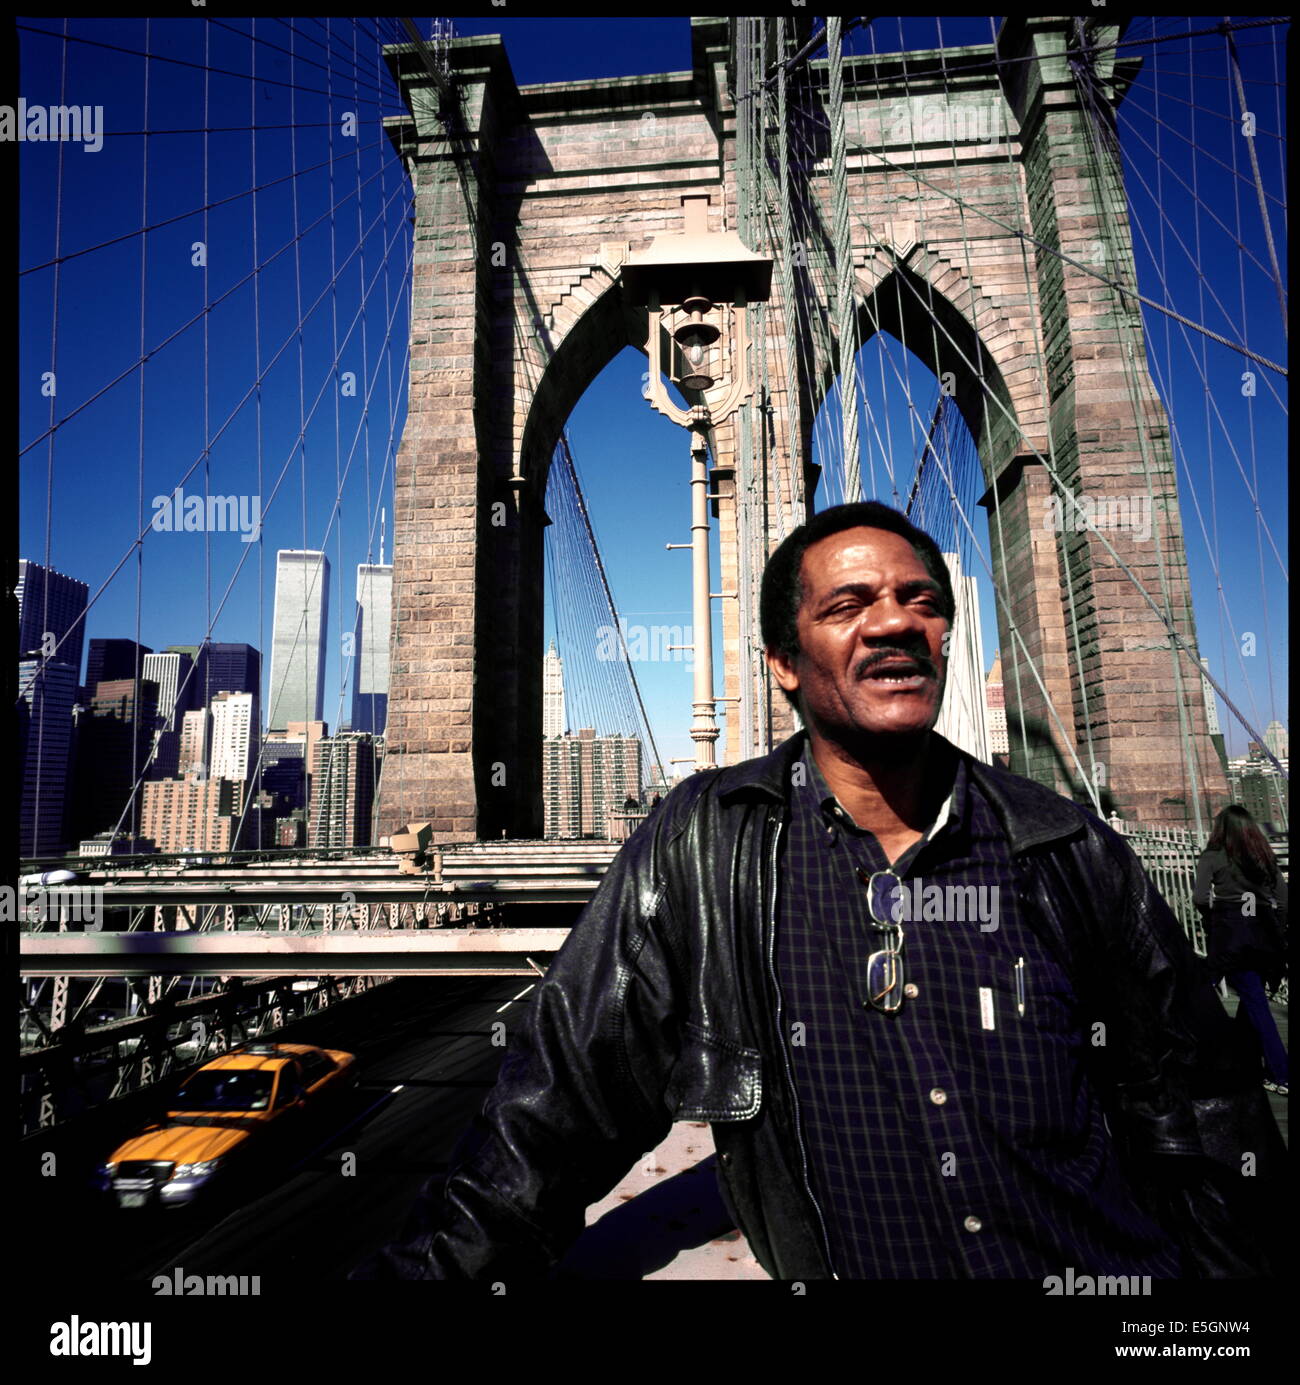 AJAXNETPHOTO. 7 ottobre 2000. New York, USA - autore americano. Lo scrittore e autore del libro Grand Central Winter Lee Straier raffigurato sul ponte di Brooklyn. Foto:Jonathan Eastland/Ajax rif:000931 FOTO:JONATHAN EASTLAND/AJAX Foto Stock